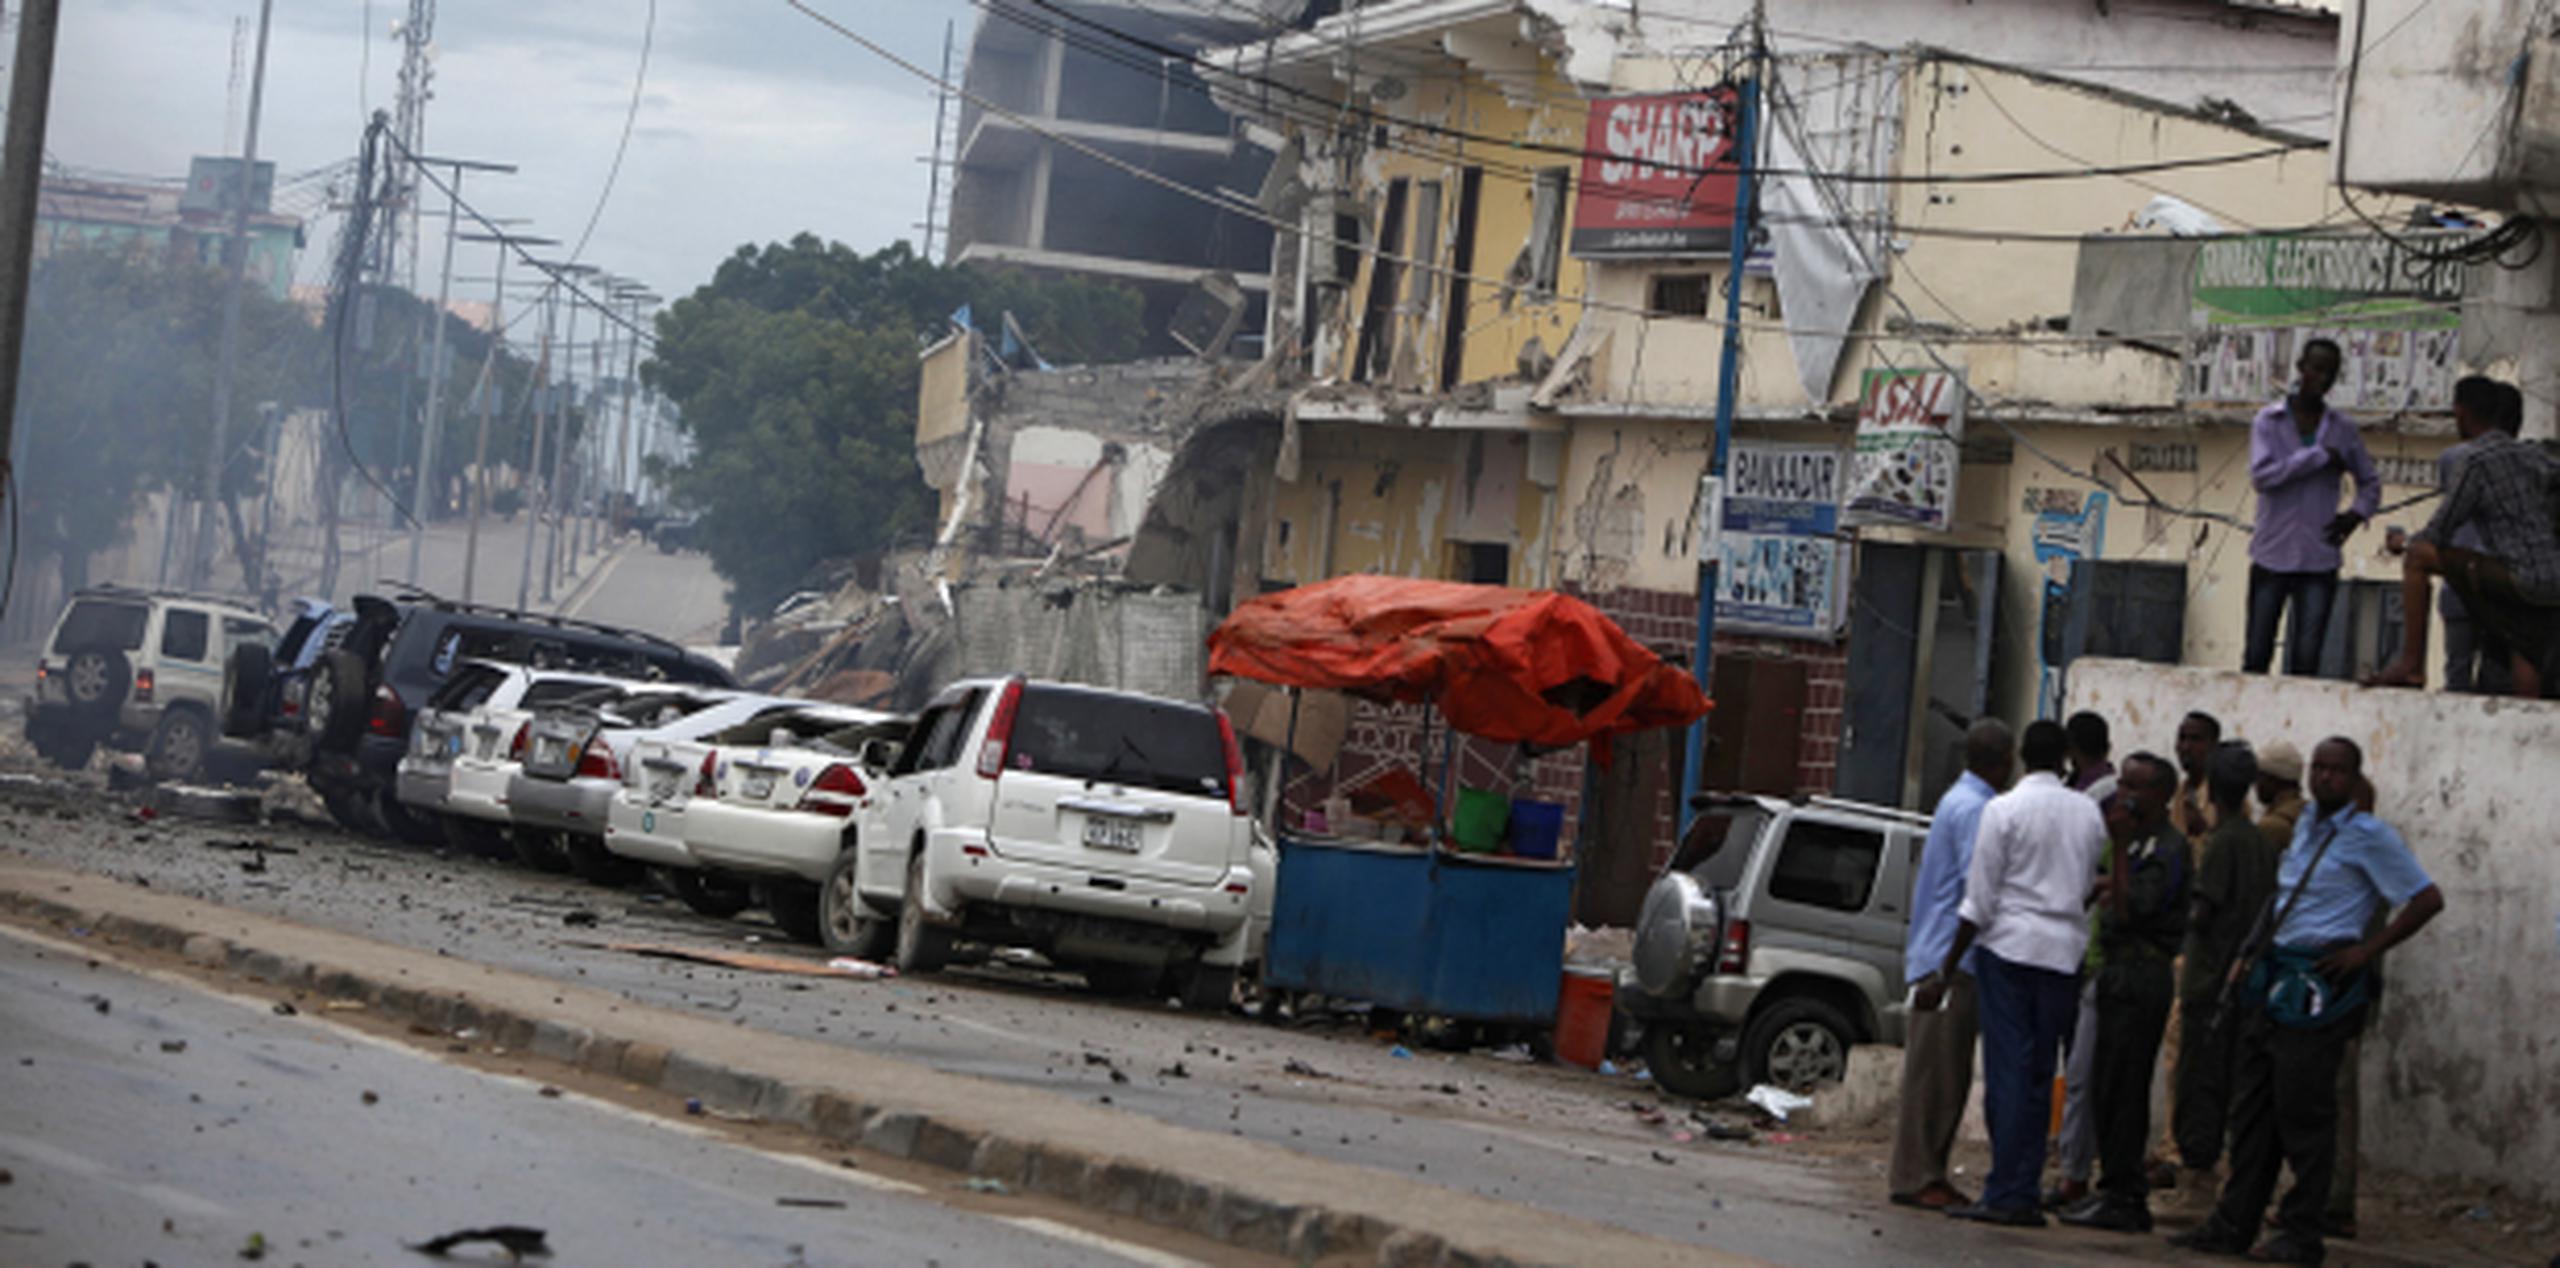 Fuerzas de seguridad de Somalia intentan poner orden en la zona del hotel Nasa-Hablod de Mogadiscio que fue atacado por terroristas, dejando un saldo de por lo menos 35 muertos. (AP/Farah Abdi Warsameh)